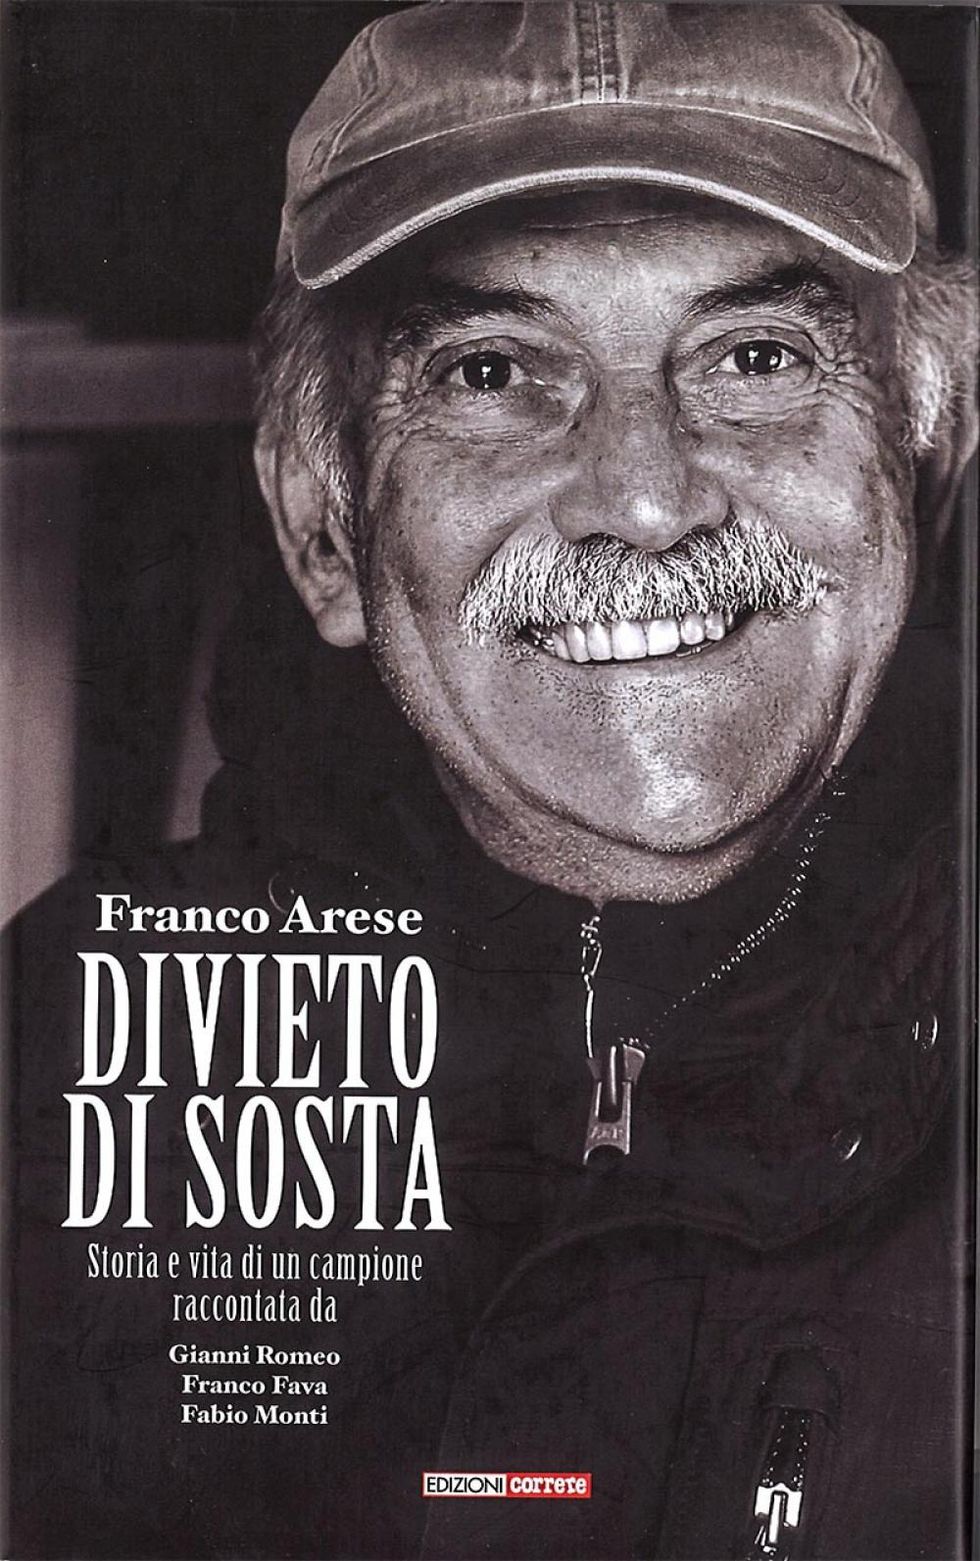 La copertina di “Divieto di sosta”, il libro di Gianni Romeo, Franco Fava e Fabio Monti su Franco Arese